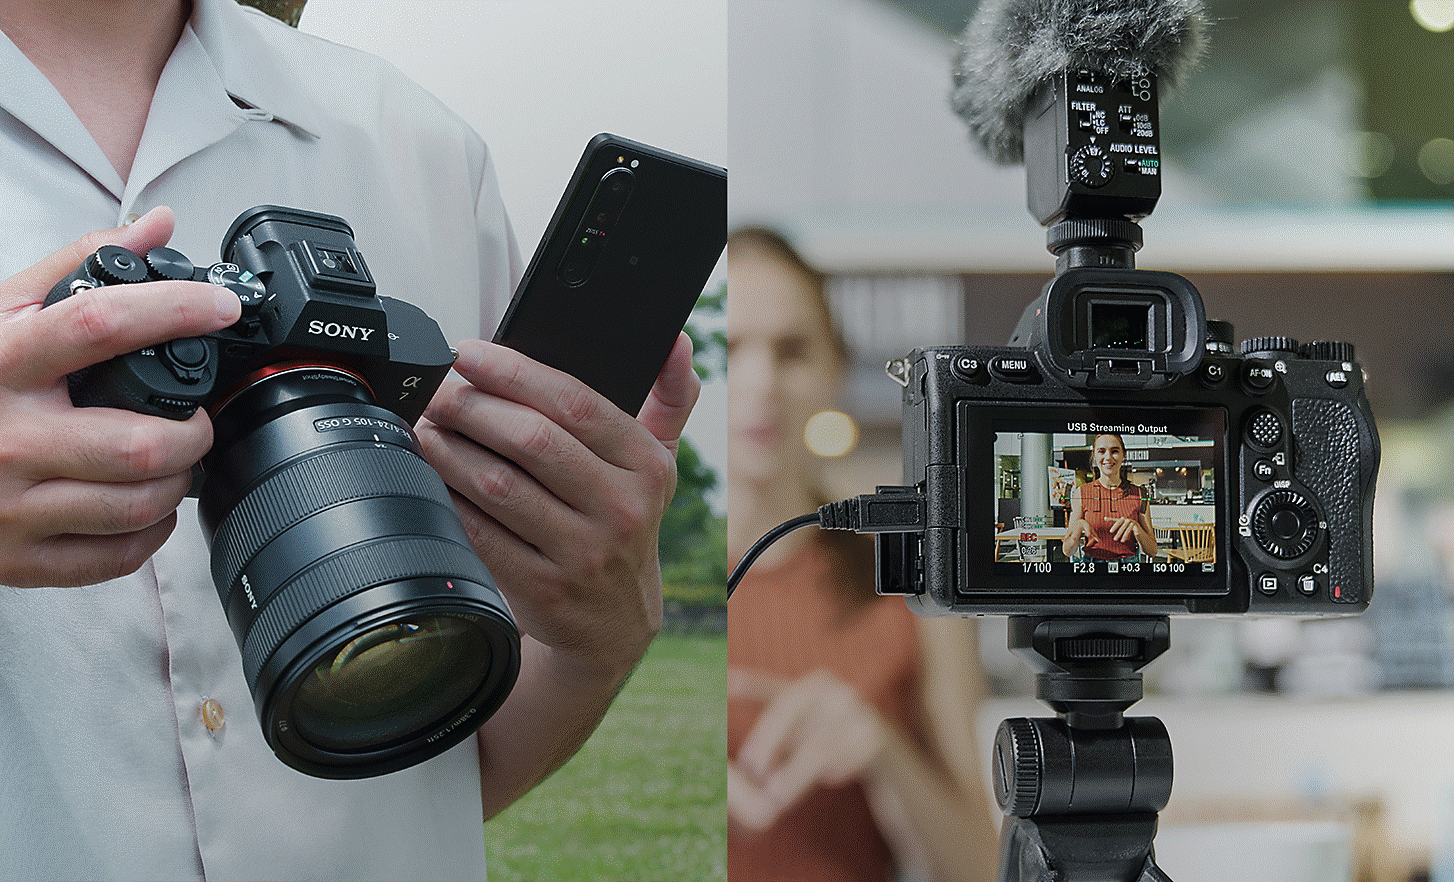 左側：相片中的人拿著 Alpha 7 IV 和智慧型手機，以便在拍攝後立即分享靜態相片或影片；右側：相片中的人正在使用 Alpha 7 IV 進行即時串流